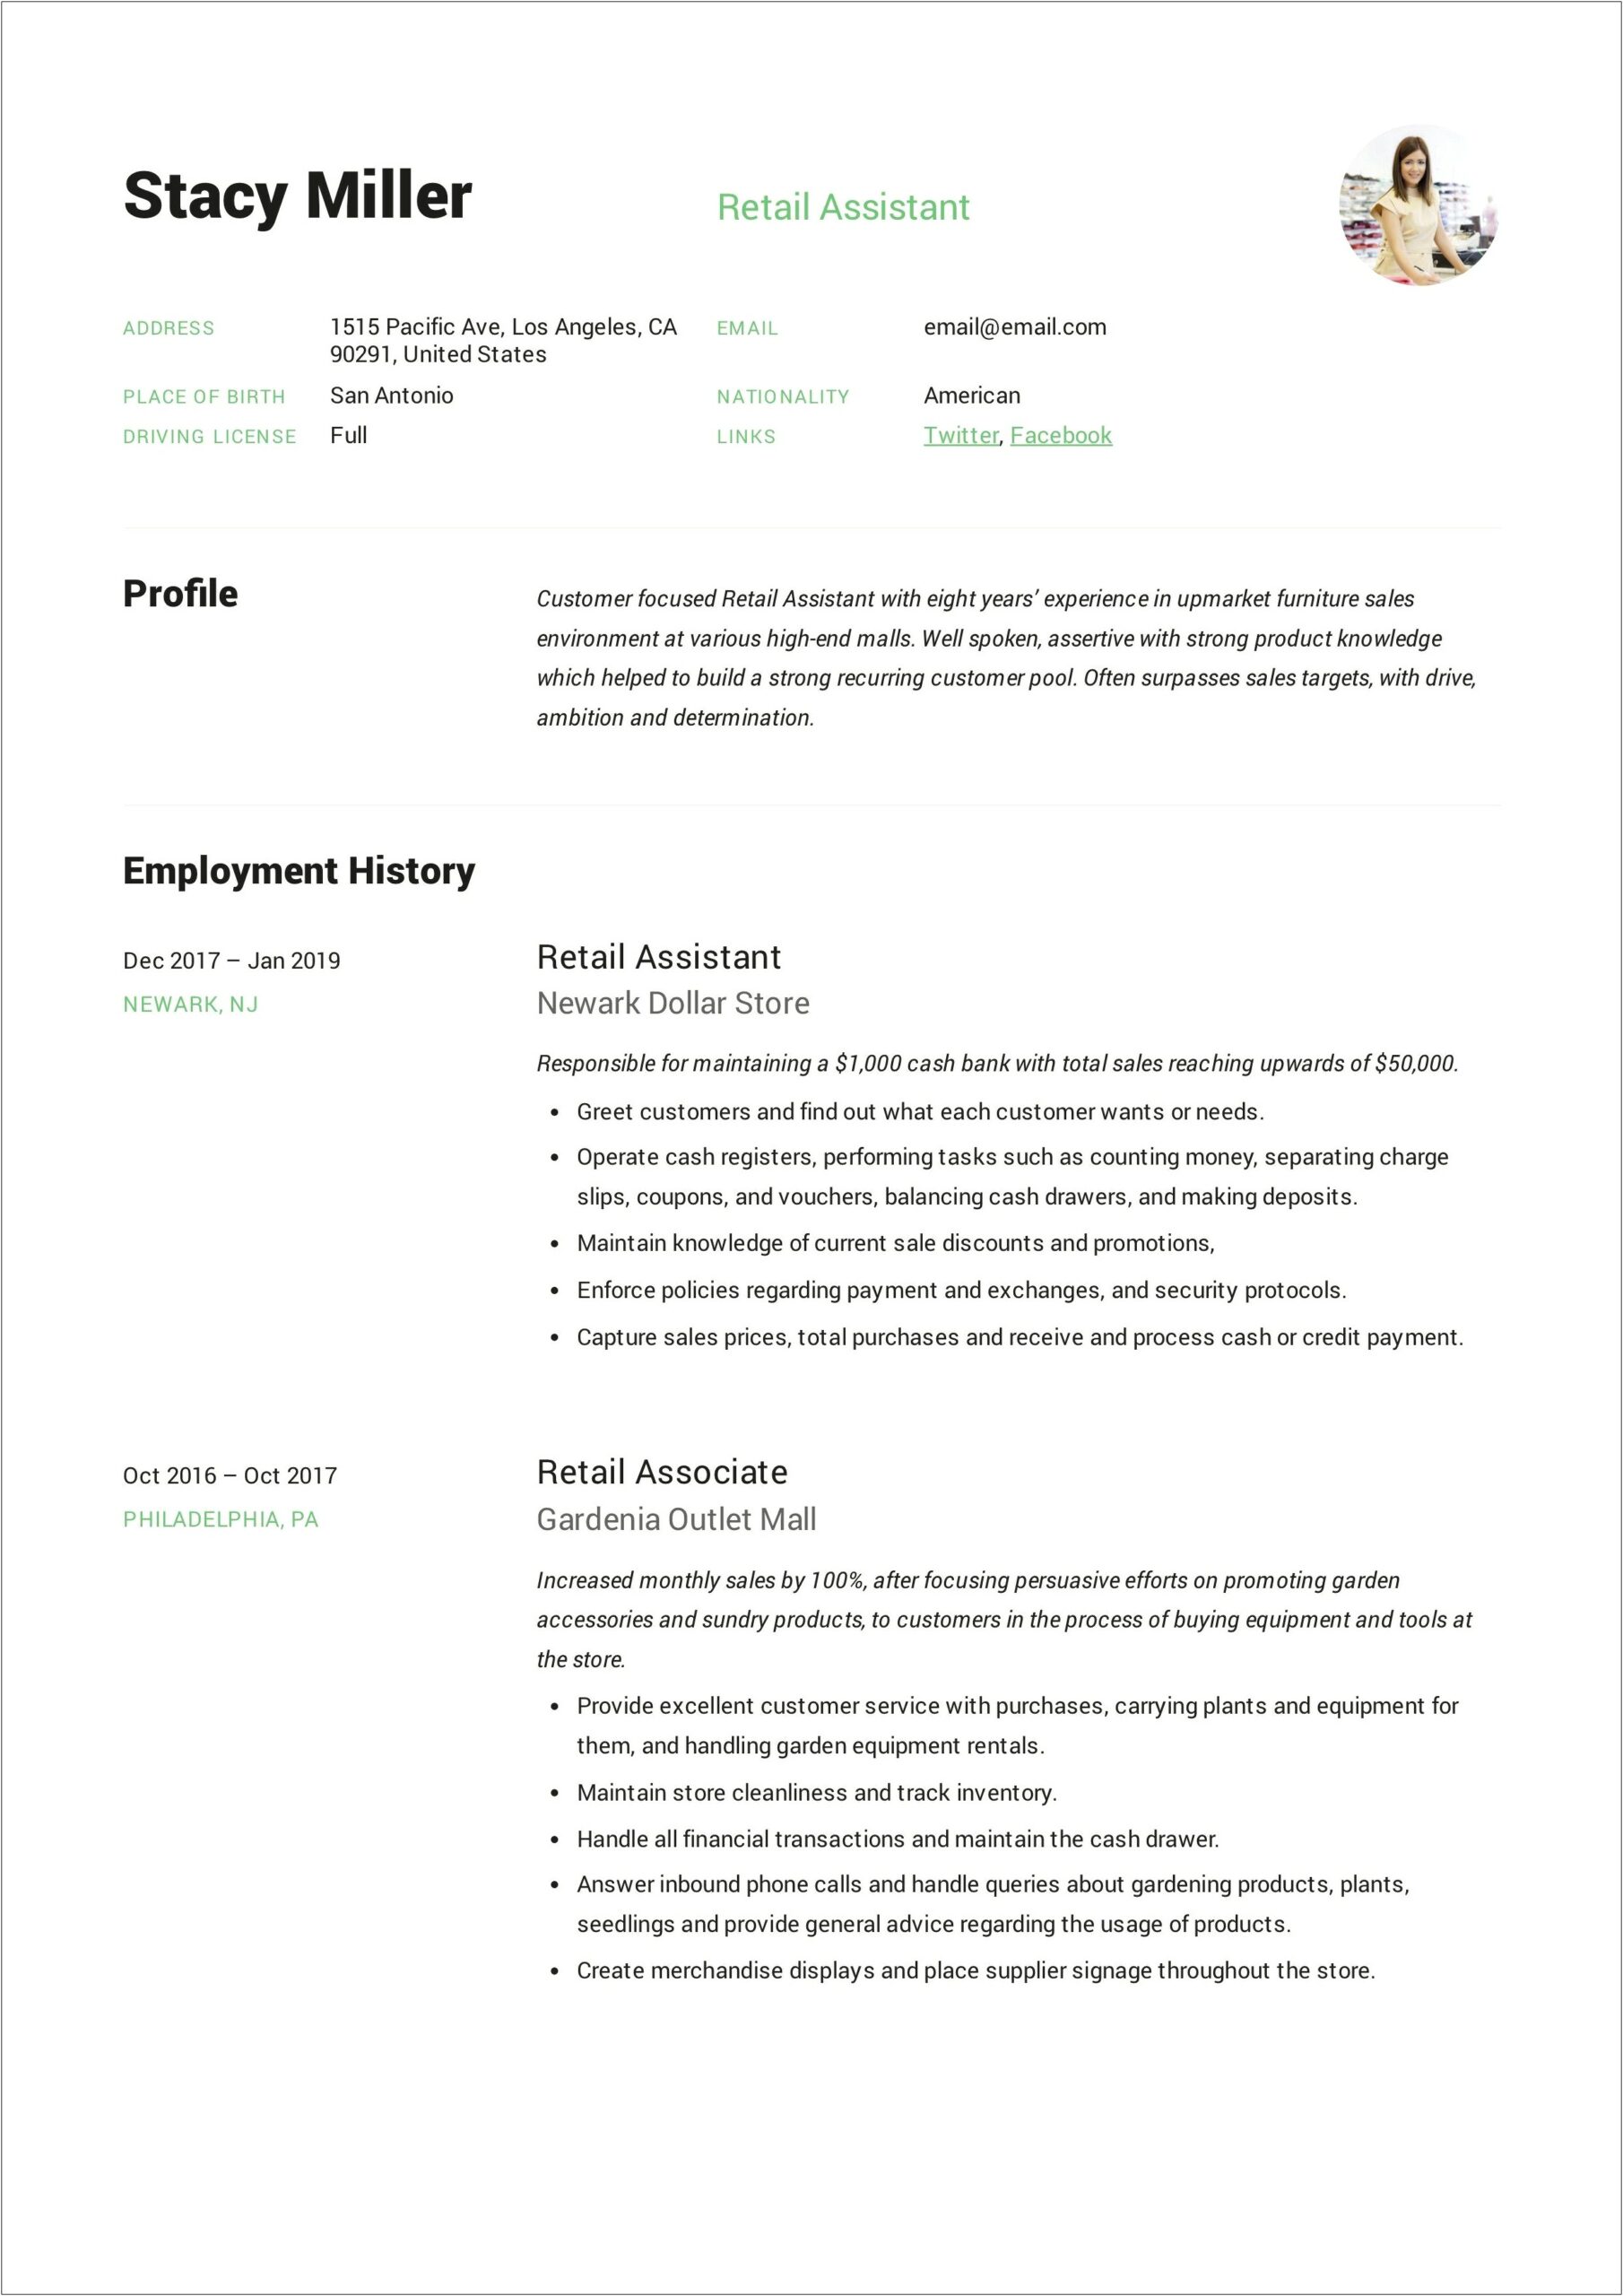 Retail Assistant Job Description Resume